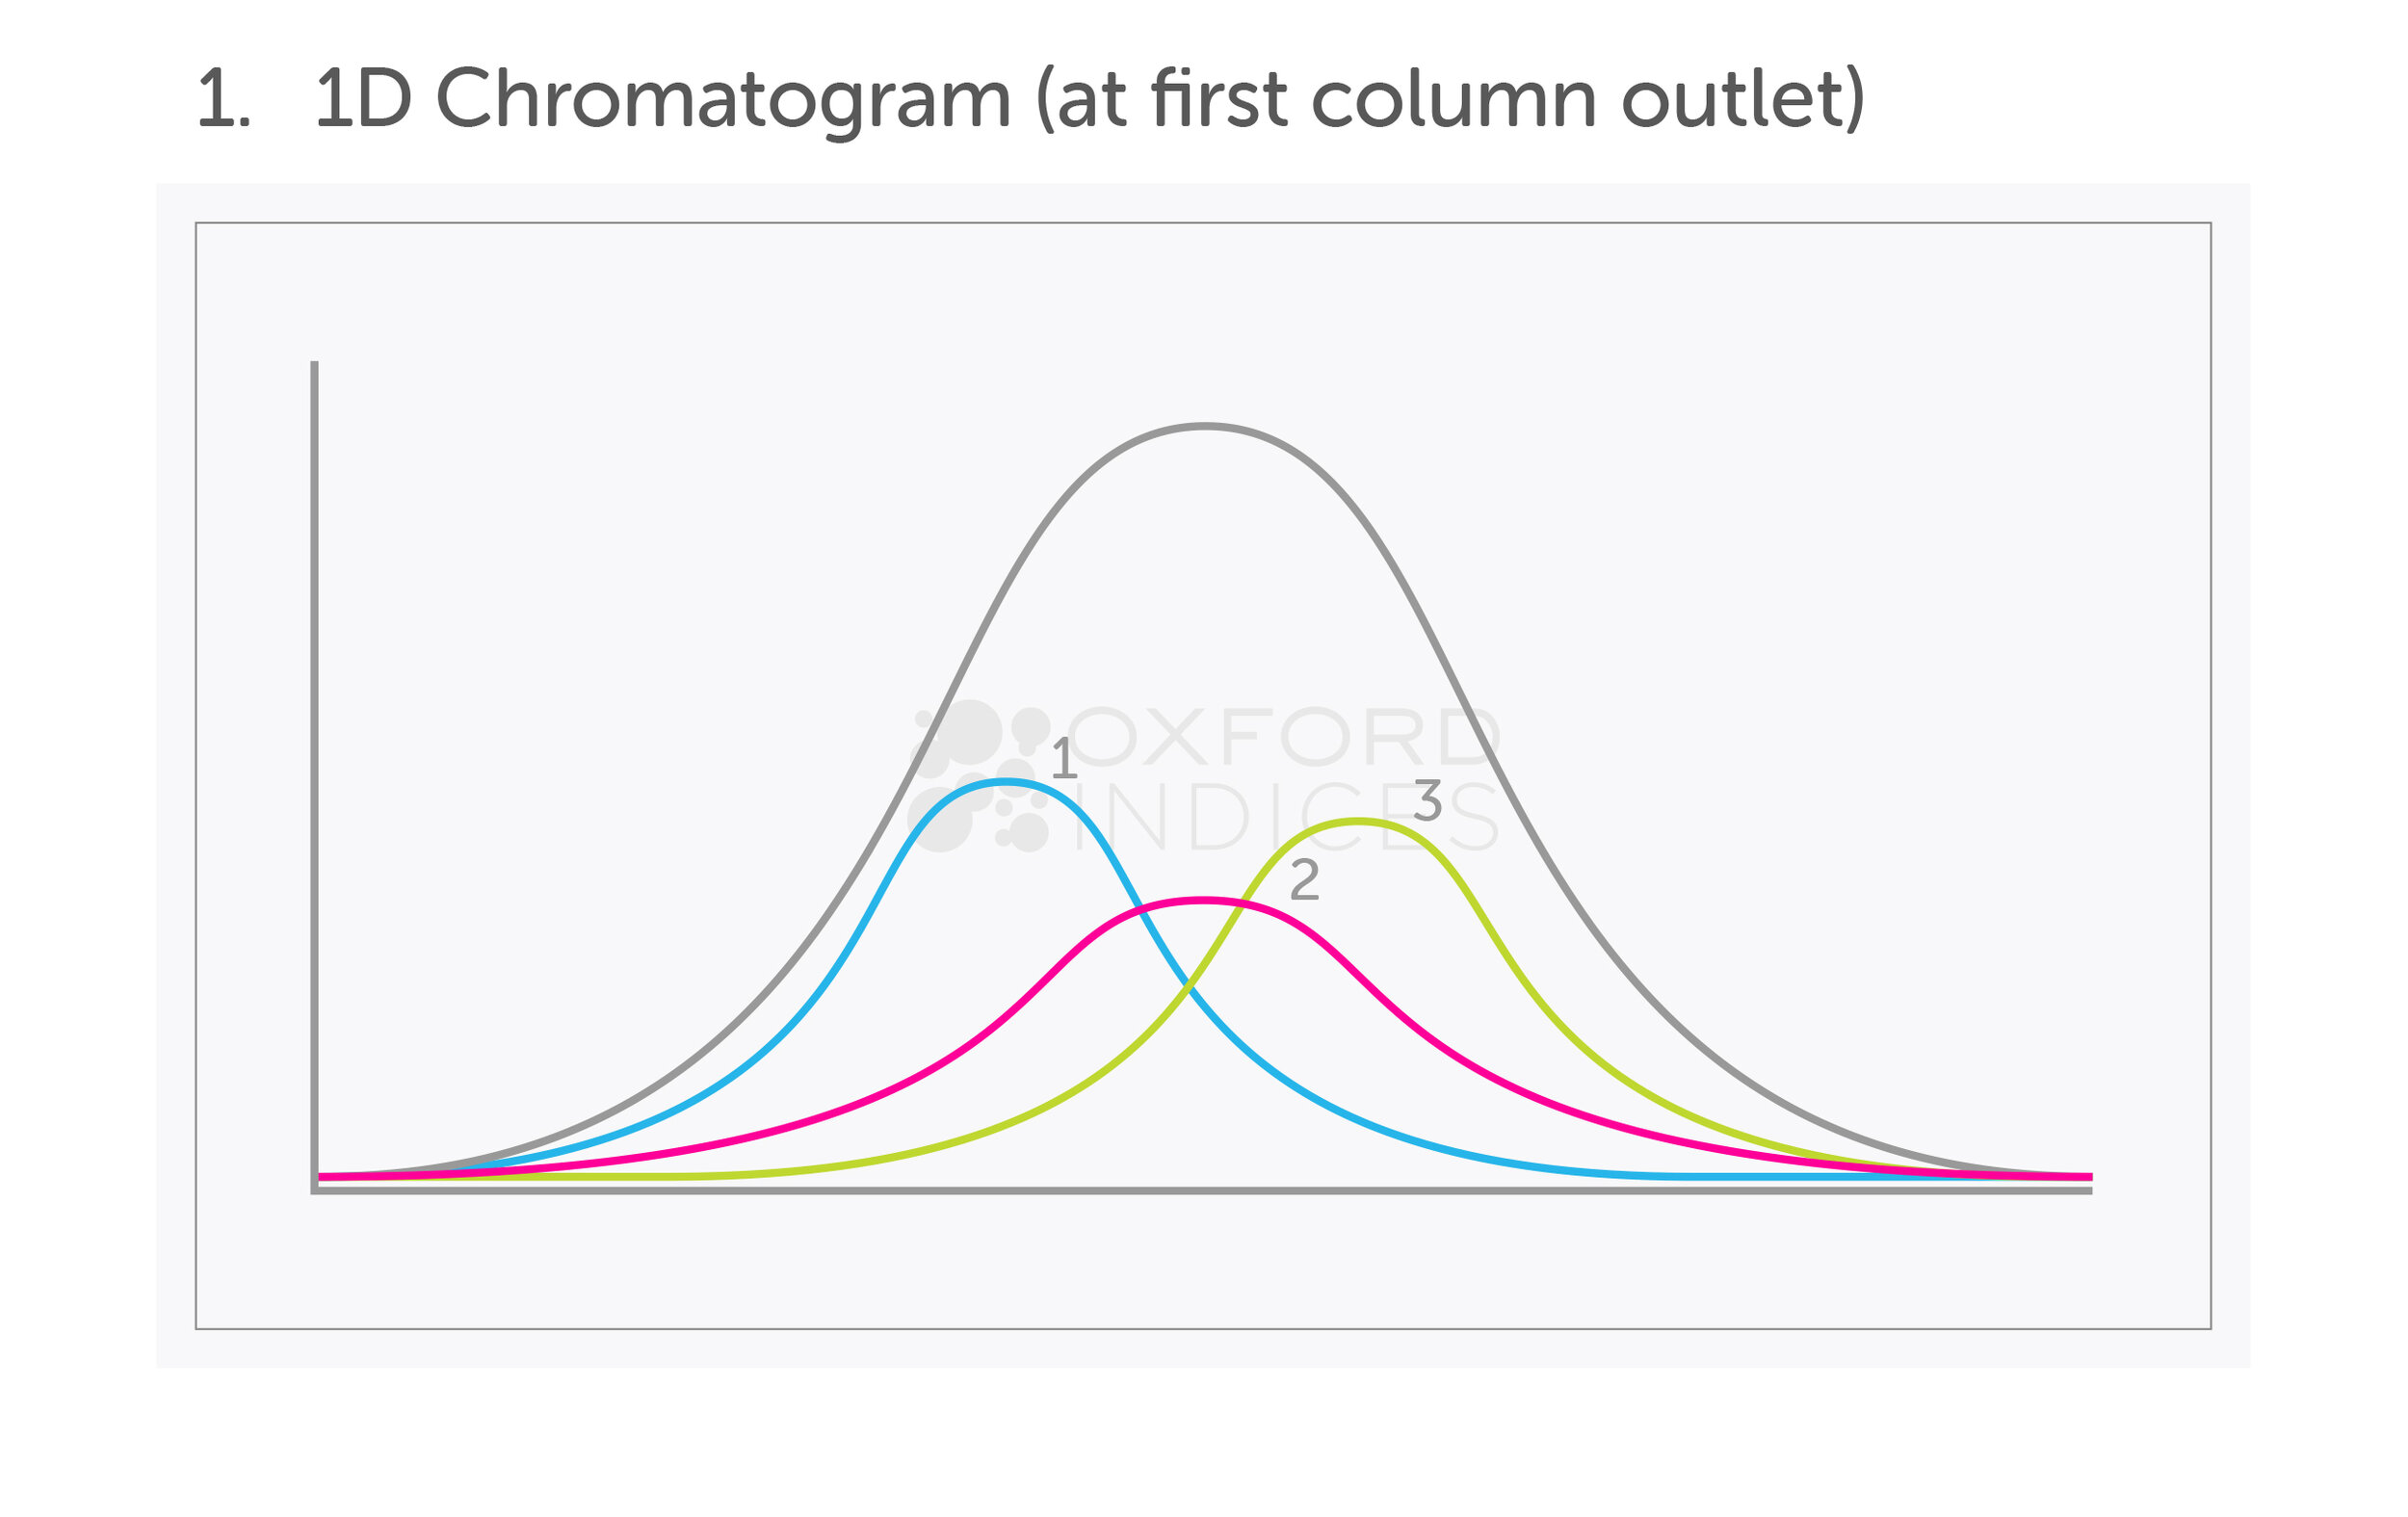 OI-Chromatogram-v2b-heading.jpg